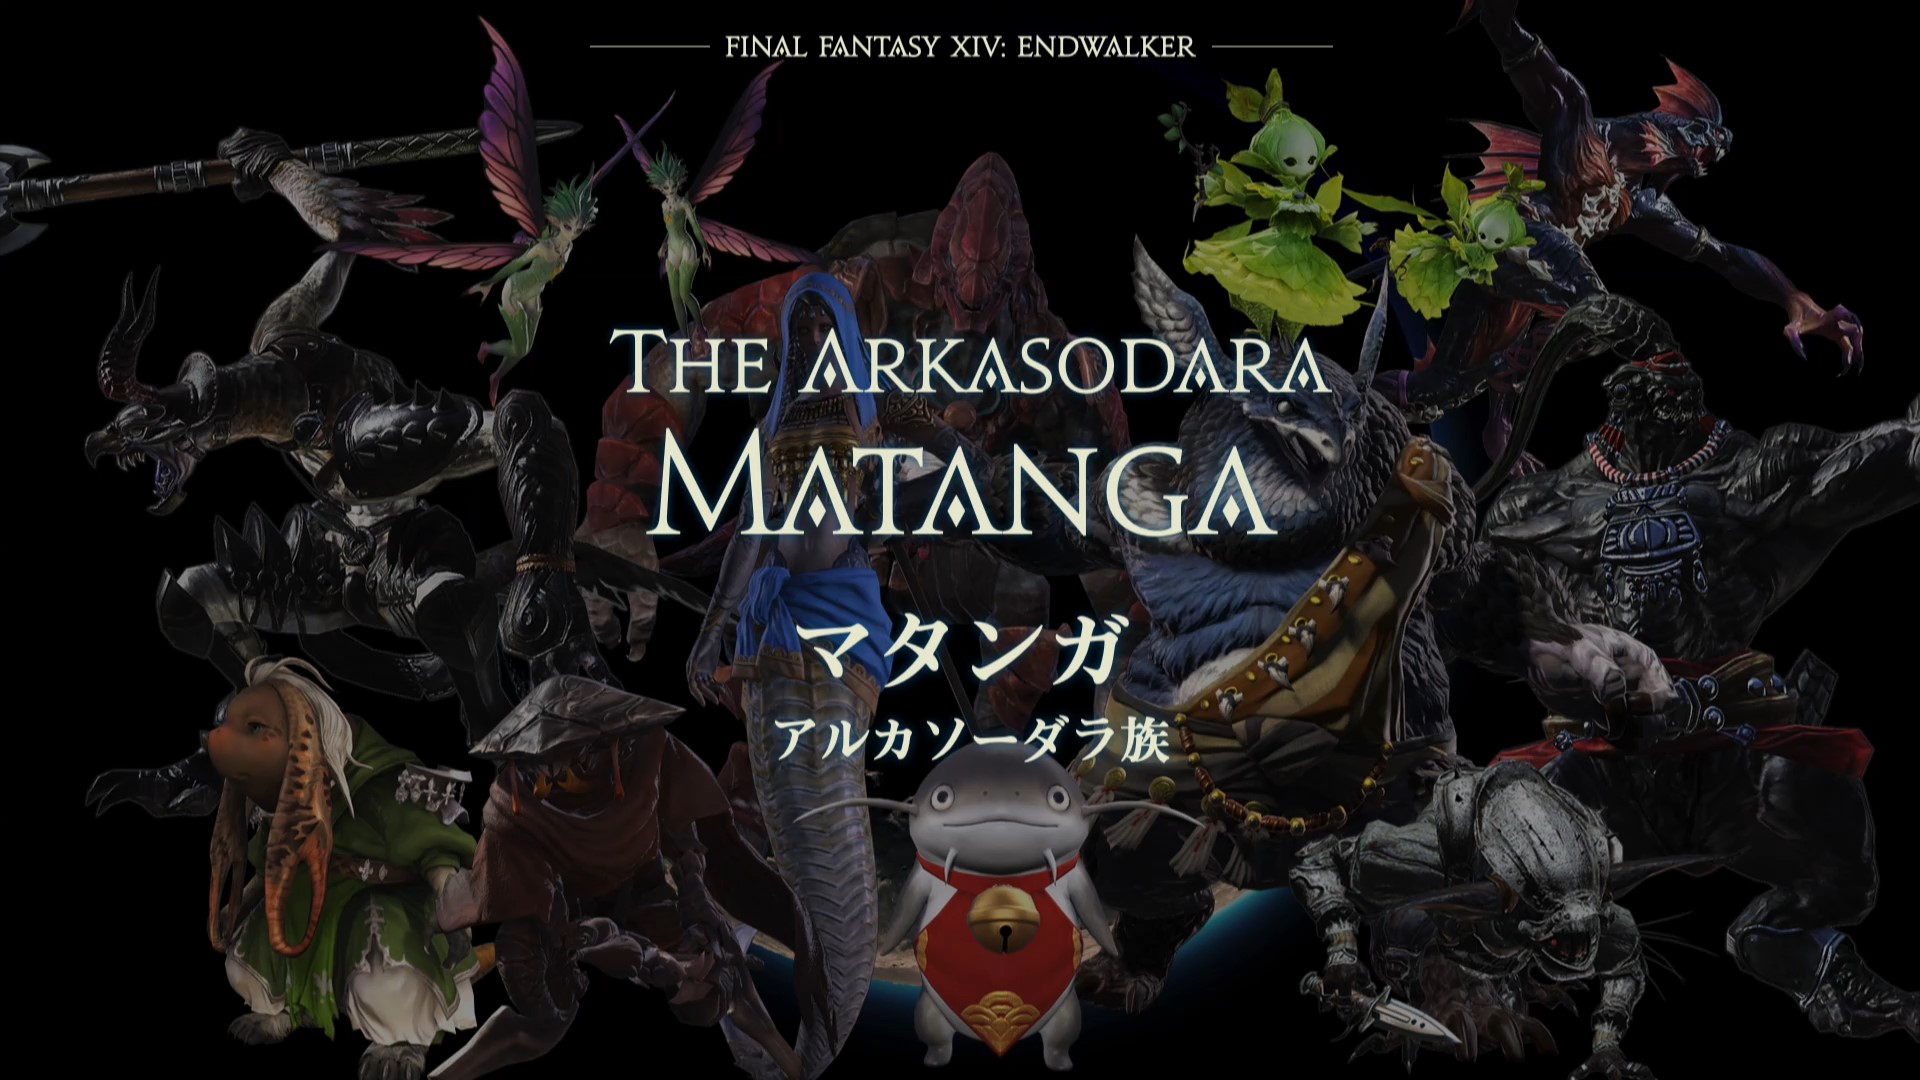 FFXIV 6.0 Endwalker: The Arkasodara Matanga